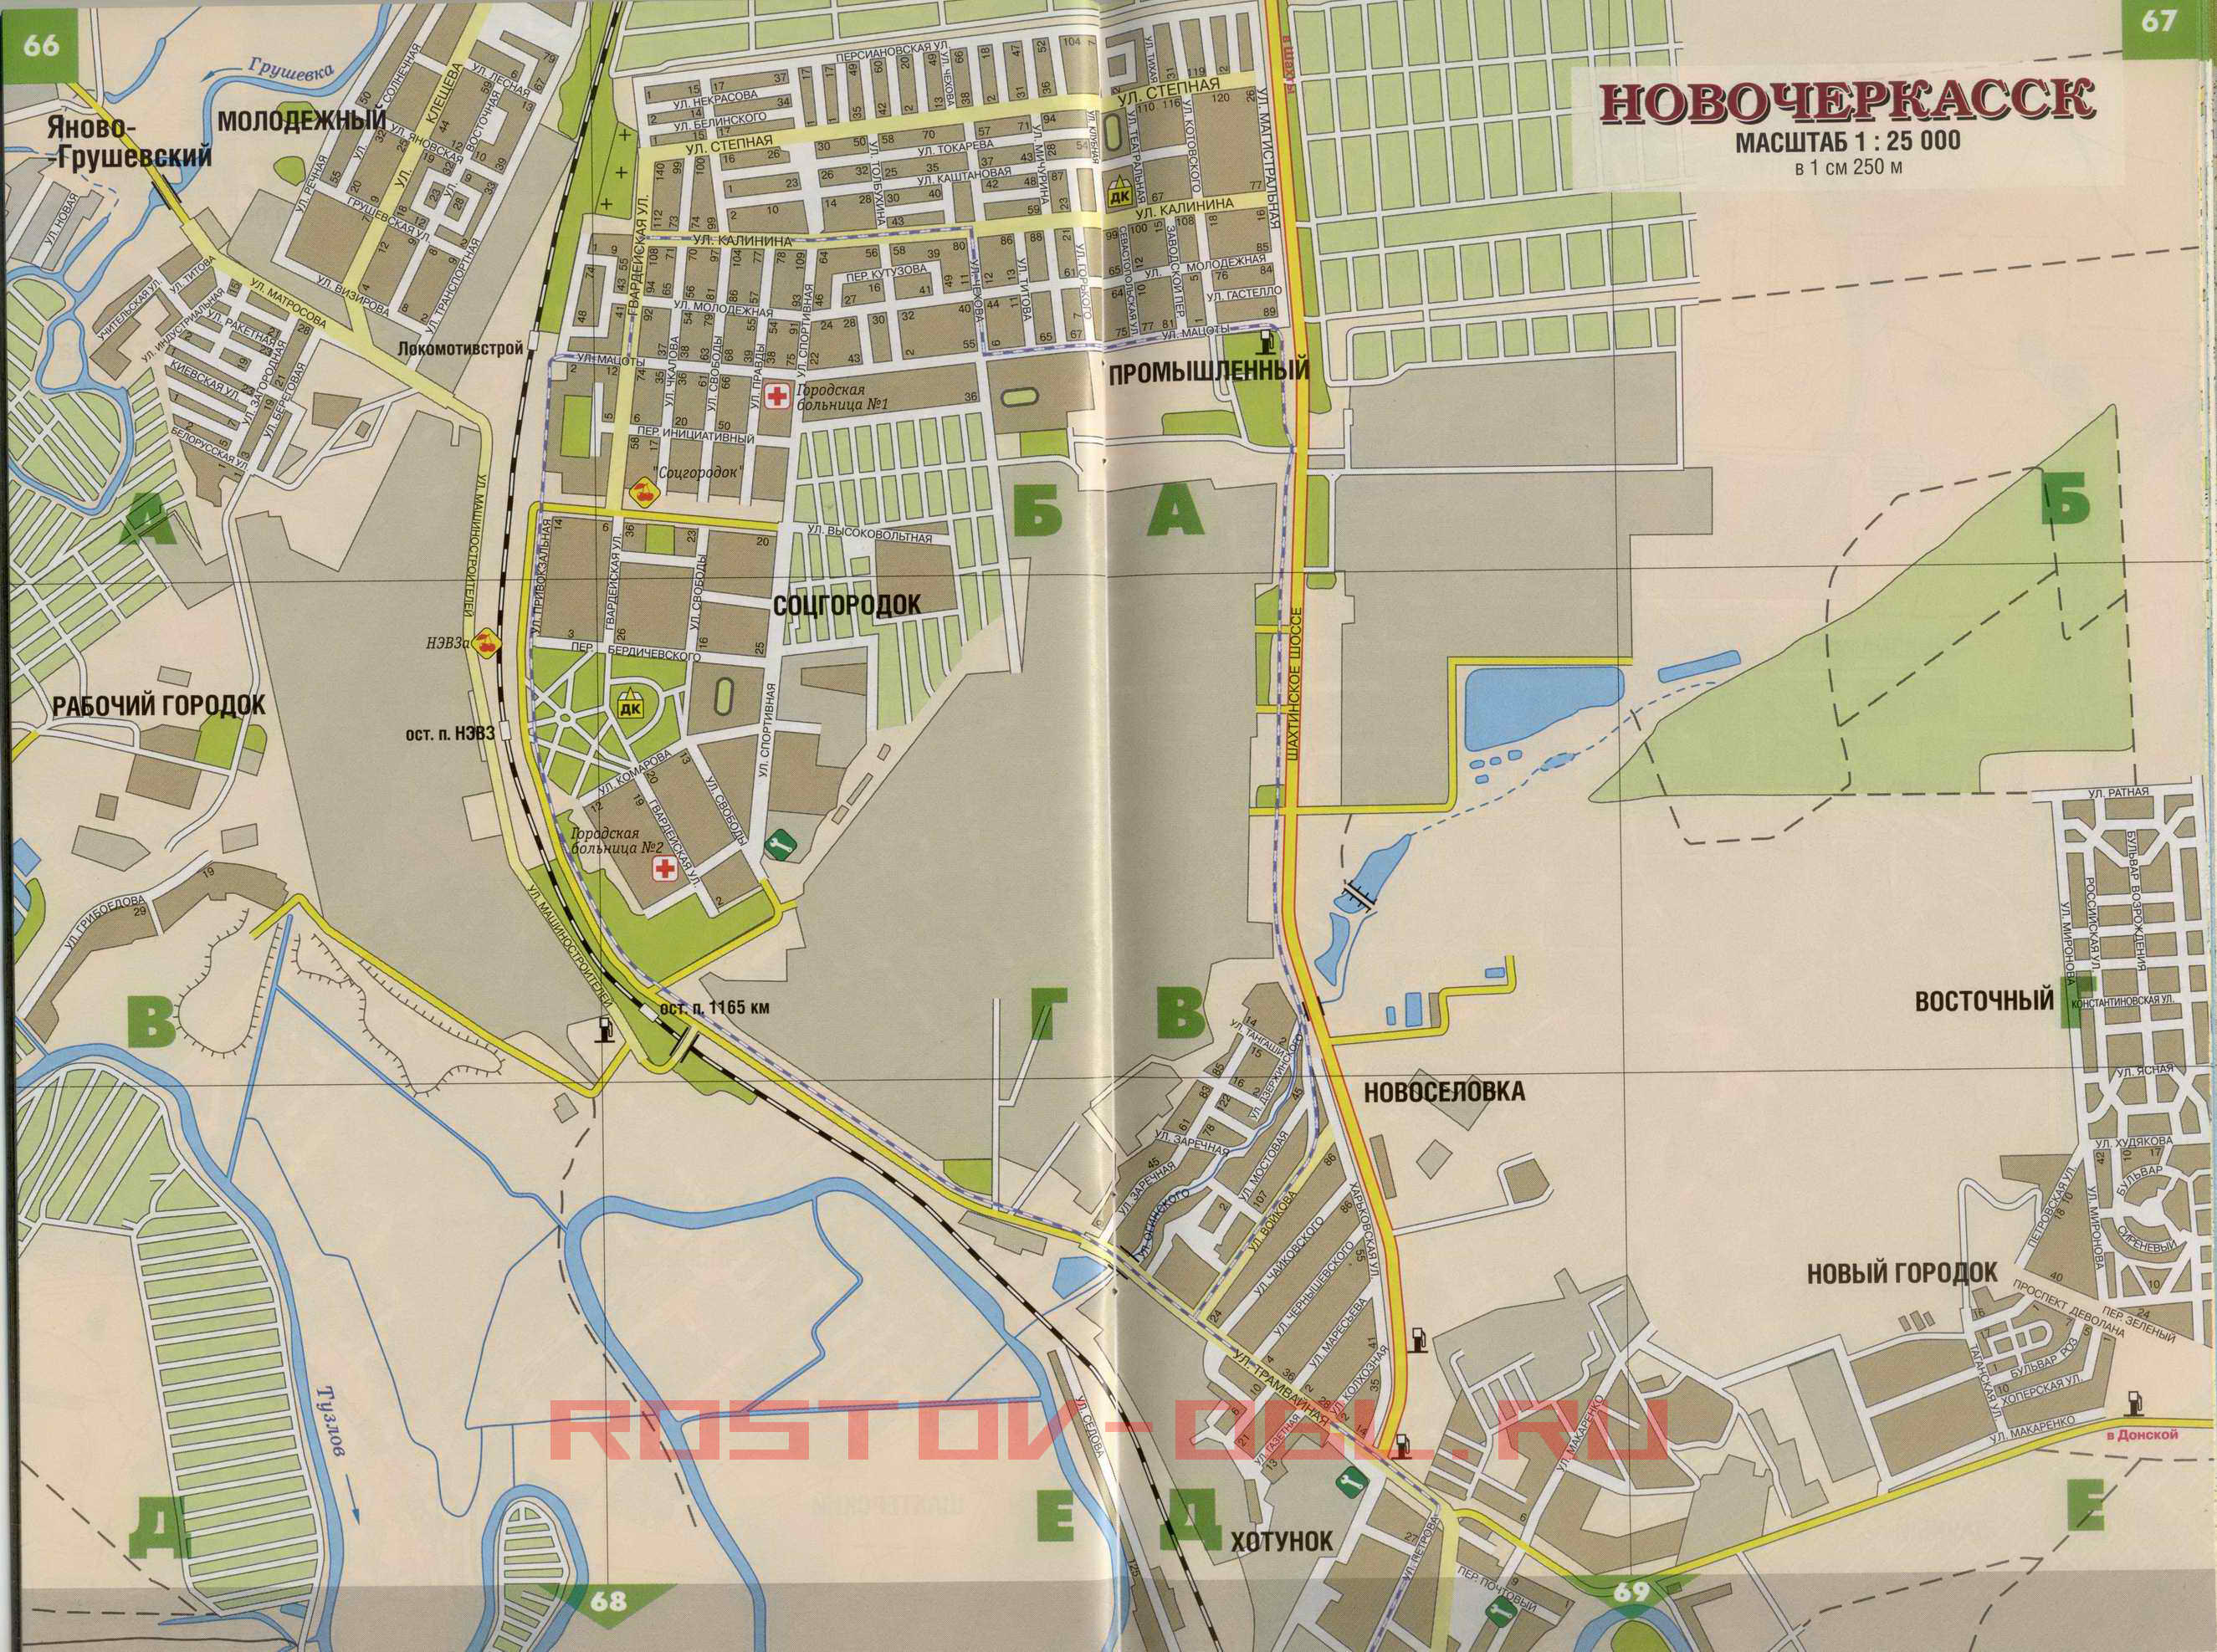 Автомобильная карта Новочеркасска. Карта города Новочеркасск с номерами домов, A0 - 